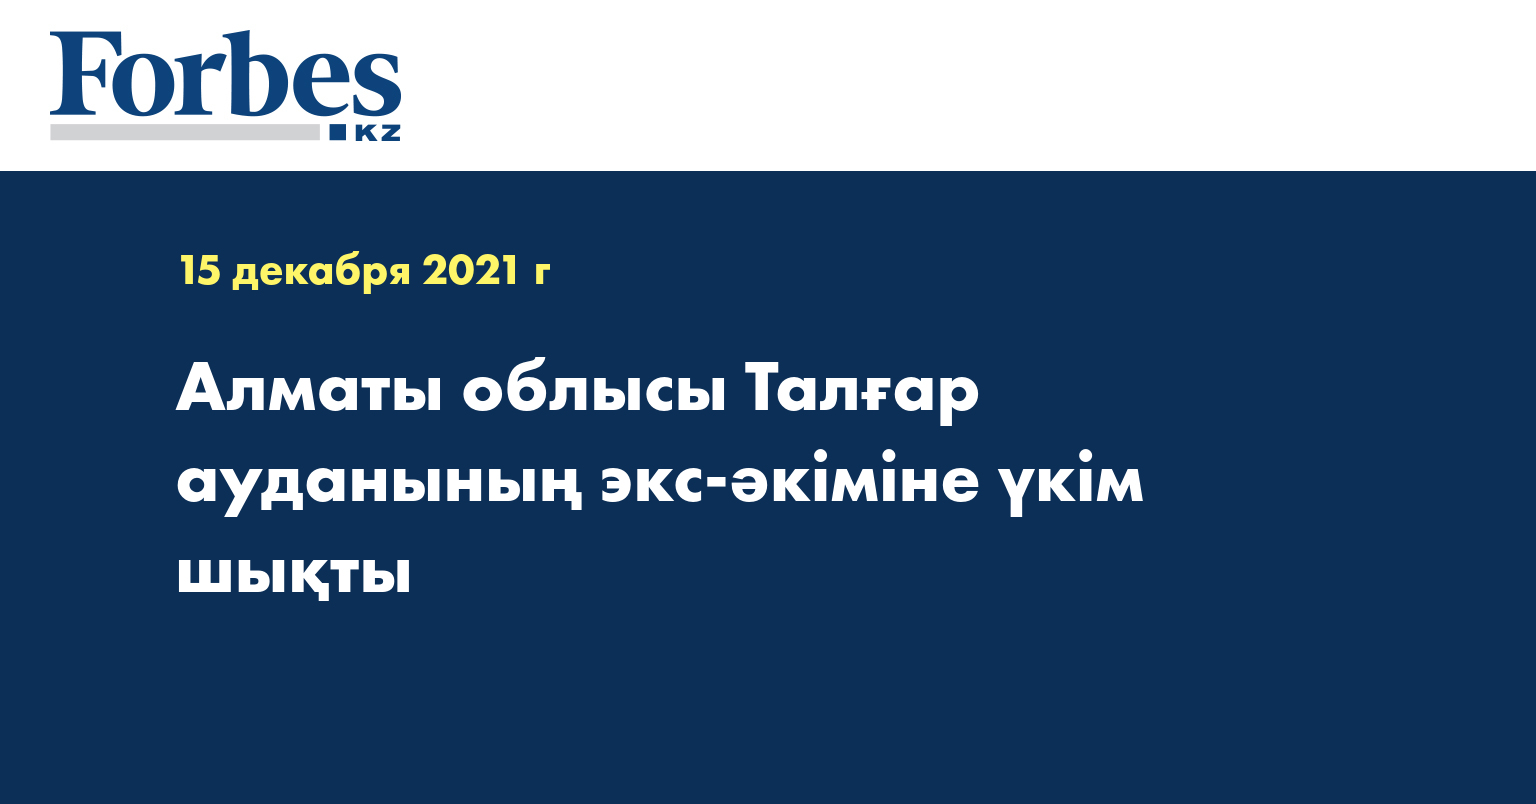 Алматы облысы Талғар ауданының экс-әкіміне үкім шықты